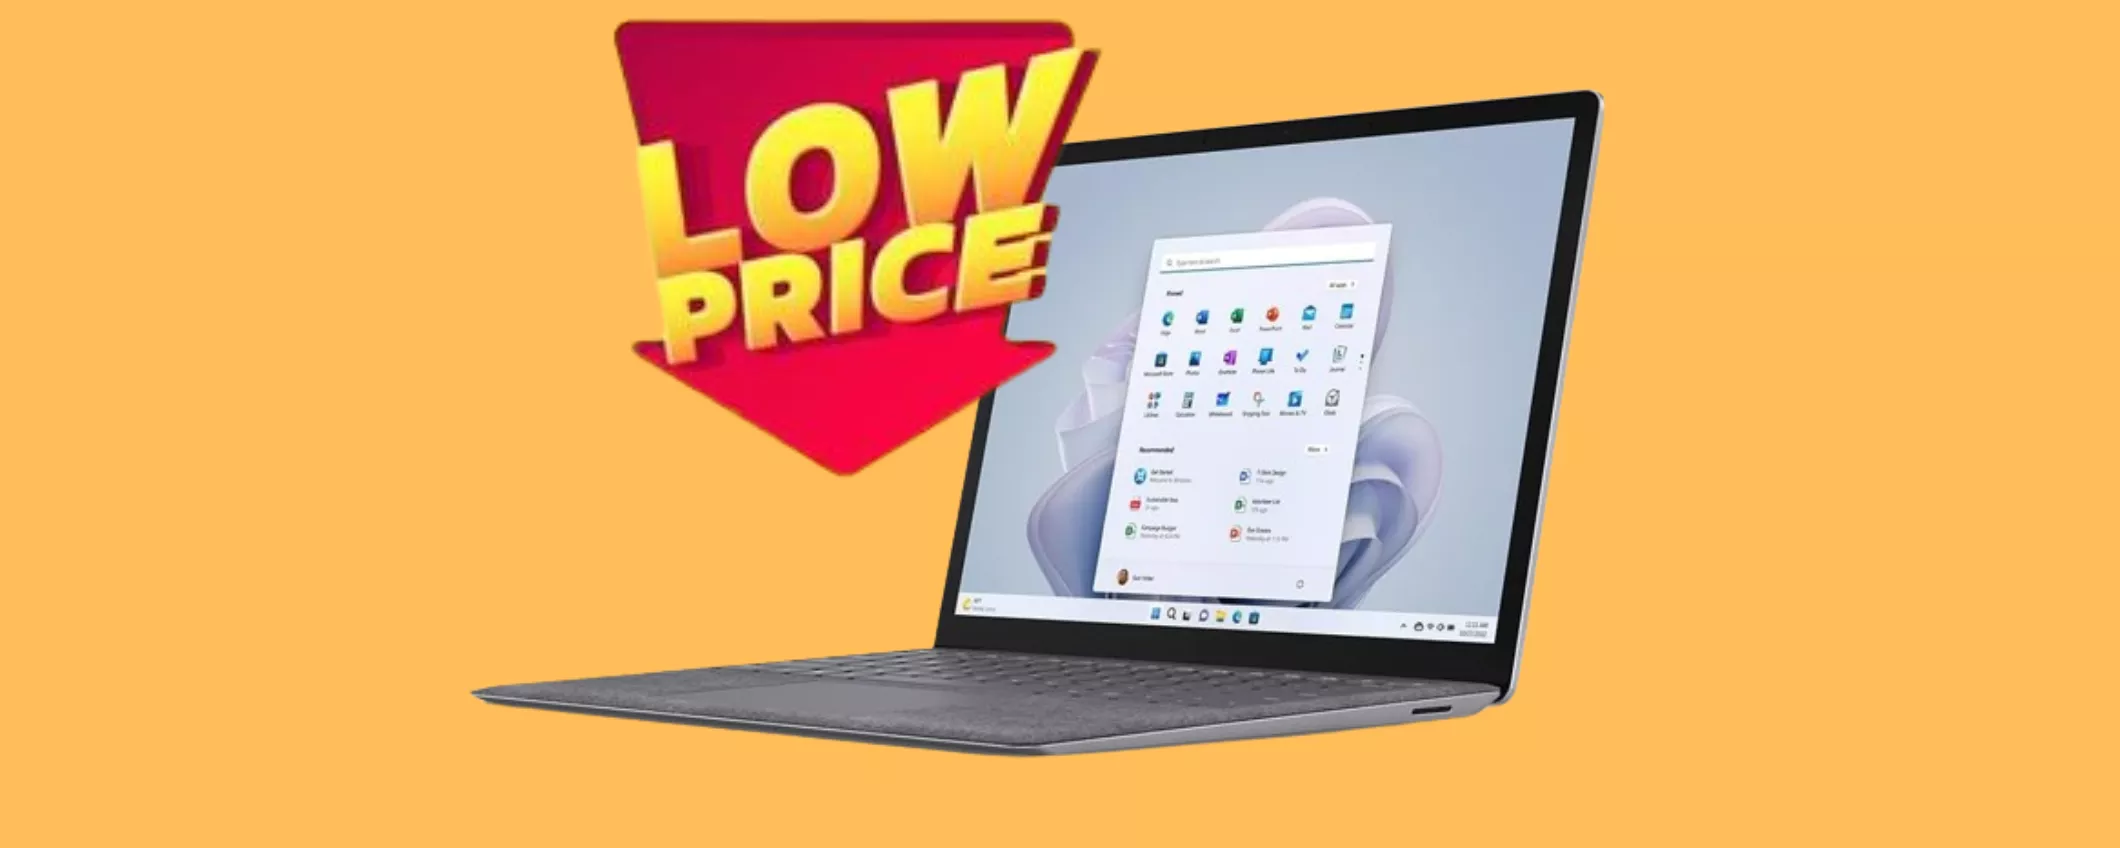 Il laptop HP più desiderato DEL MOMENTO in PROMO SPECIALE su Amazon